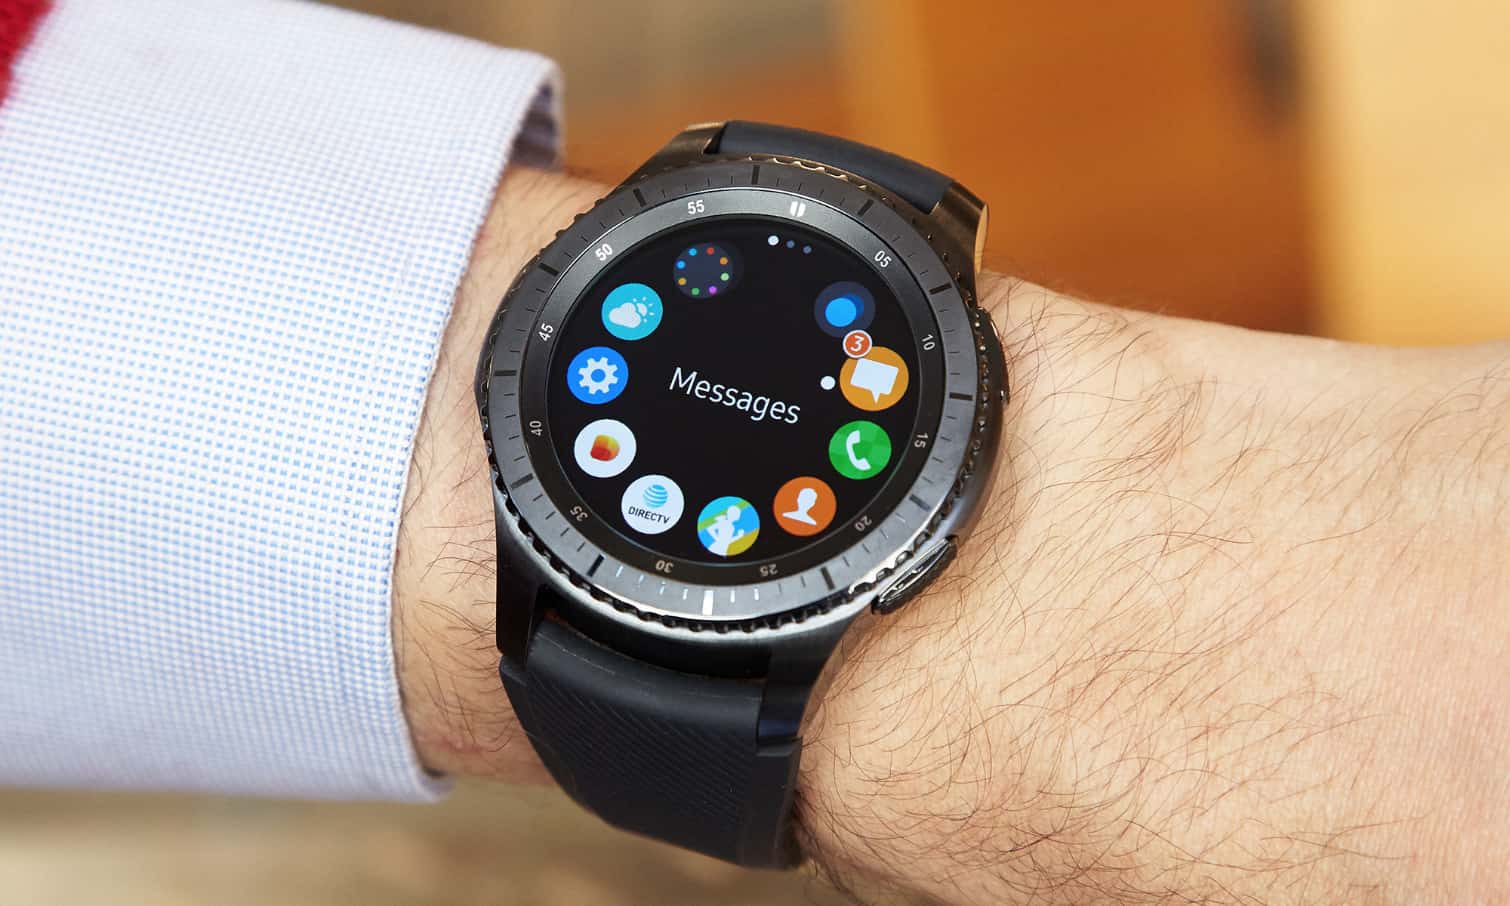 Samsung gear s2 в вариантах classic и sport предварительный подробный обзор новейших умных часов с круглым экраном06.09.2015 14:32